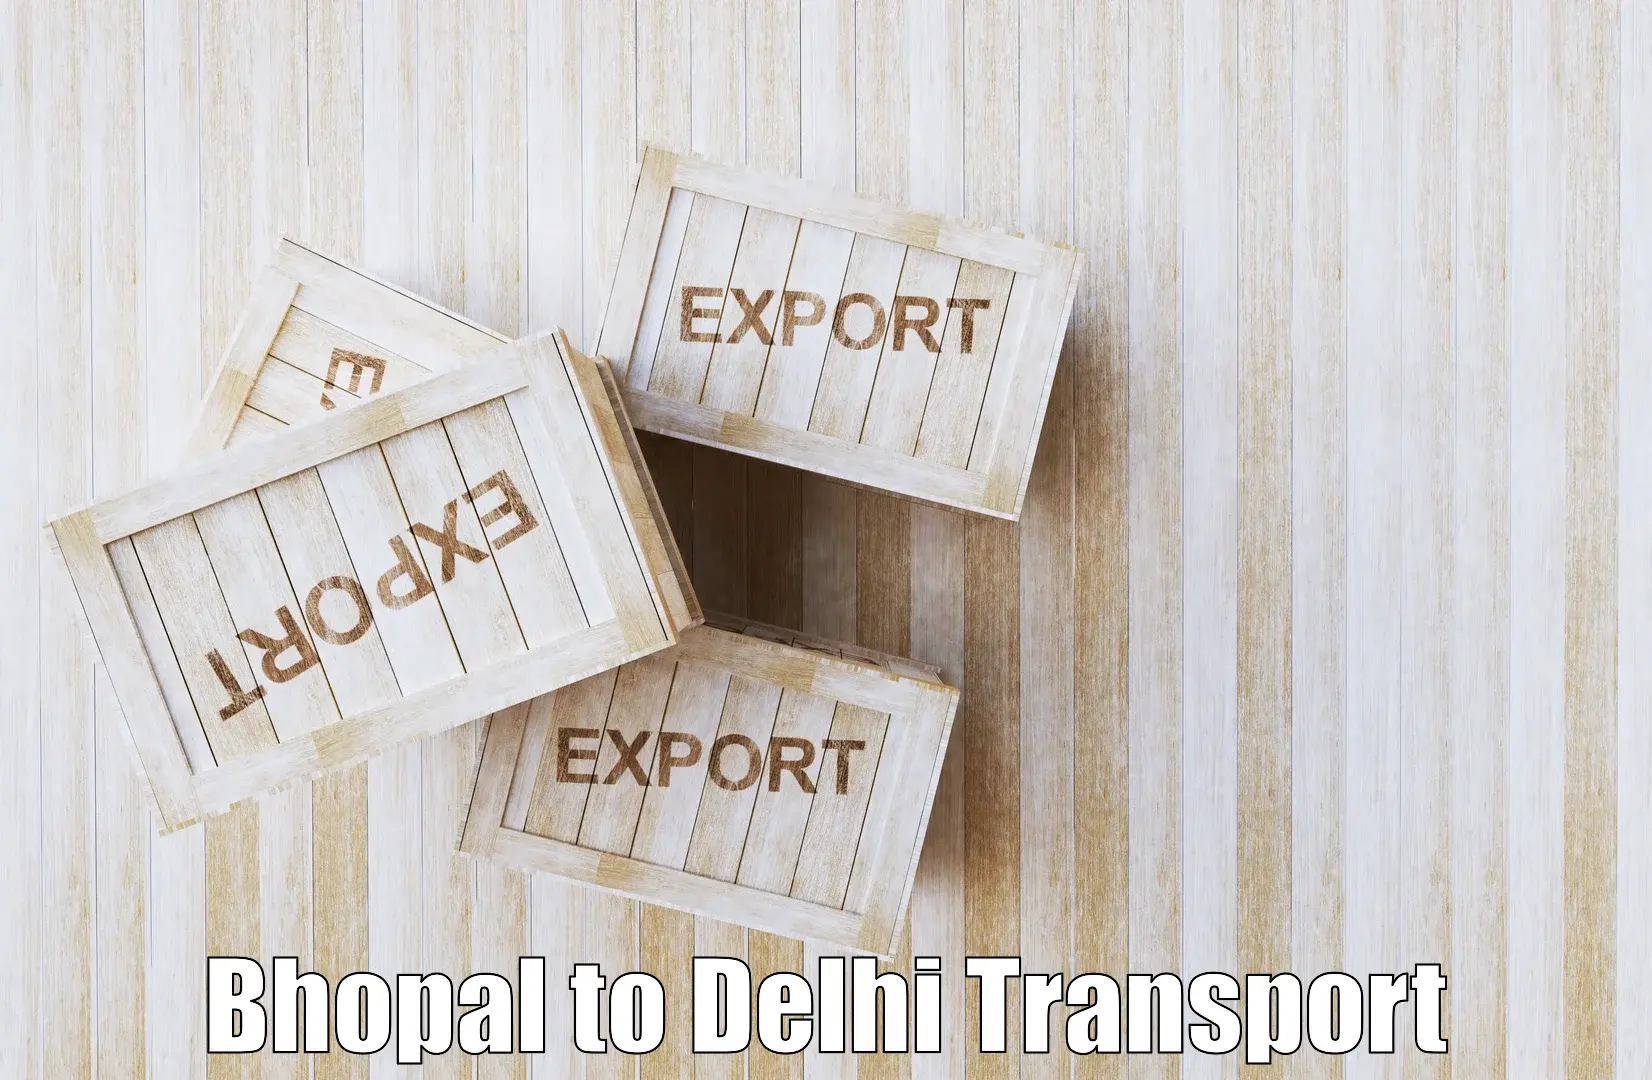 Bike shipping service Bhopal to Kalkaji